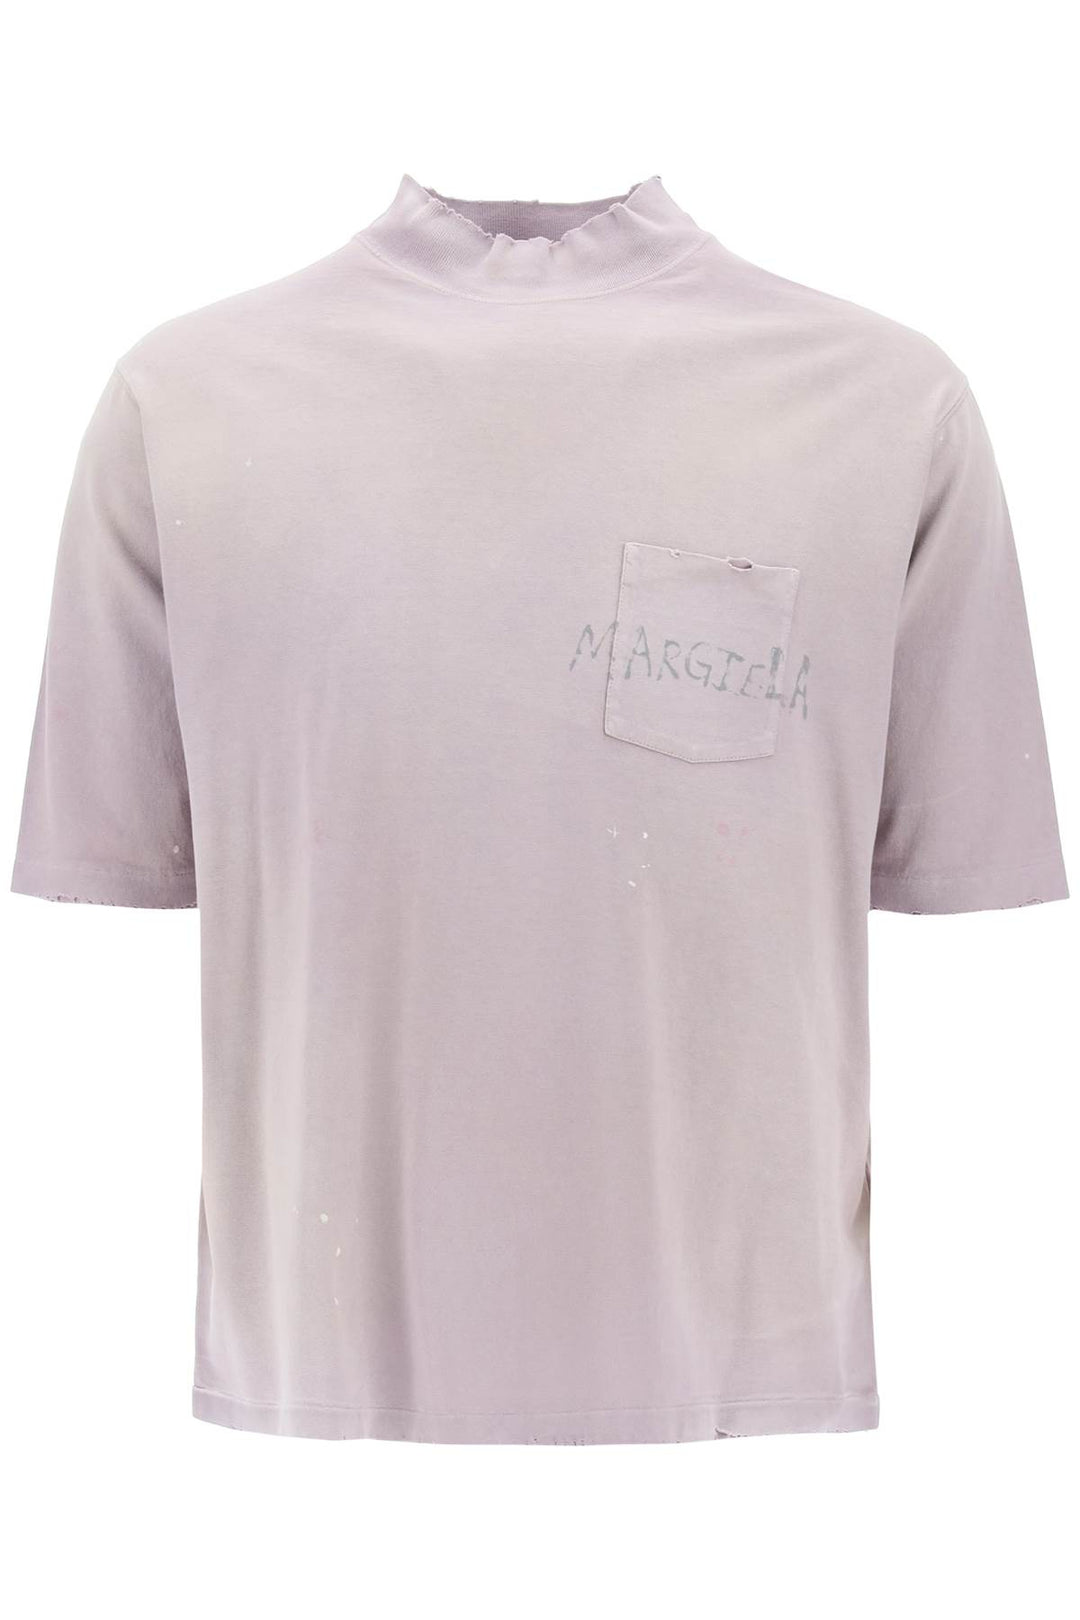 Maison Margiela Handwritten Logo T Shirt With Written Text   Viola